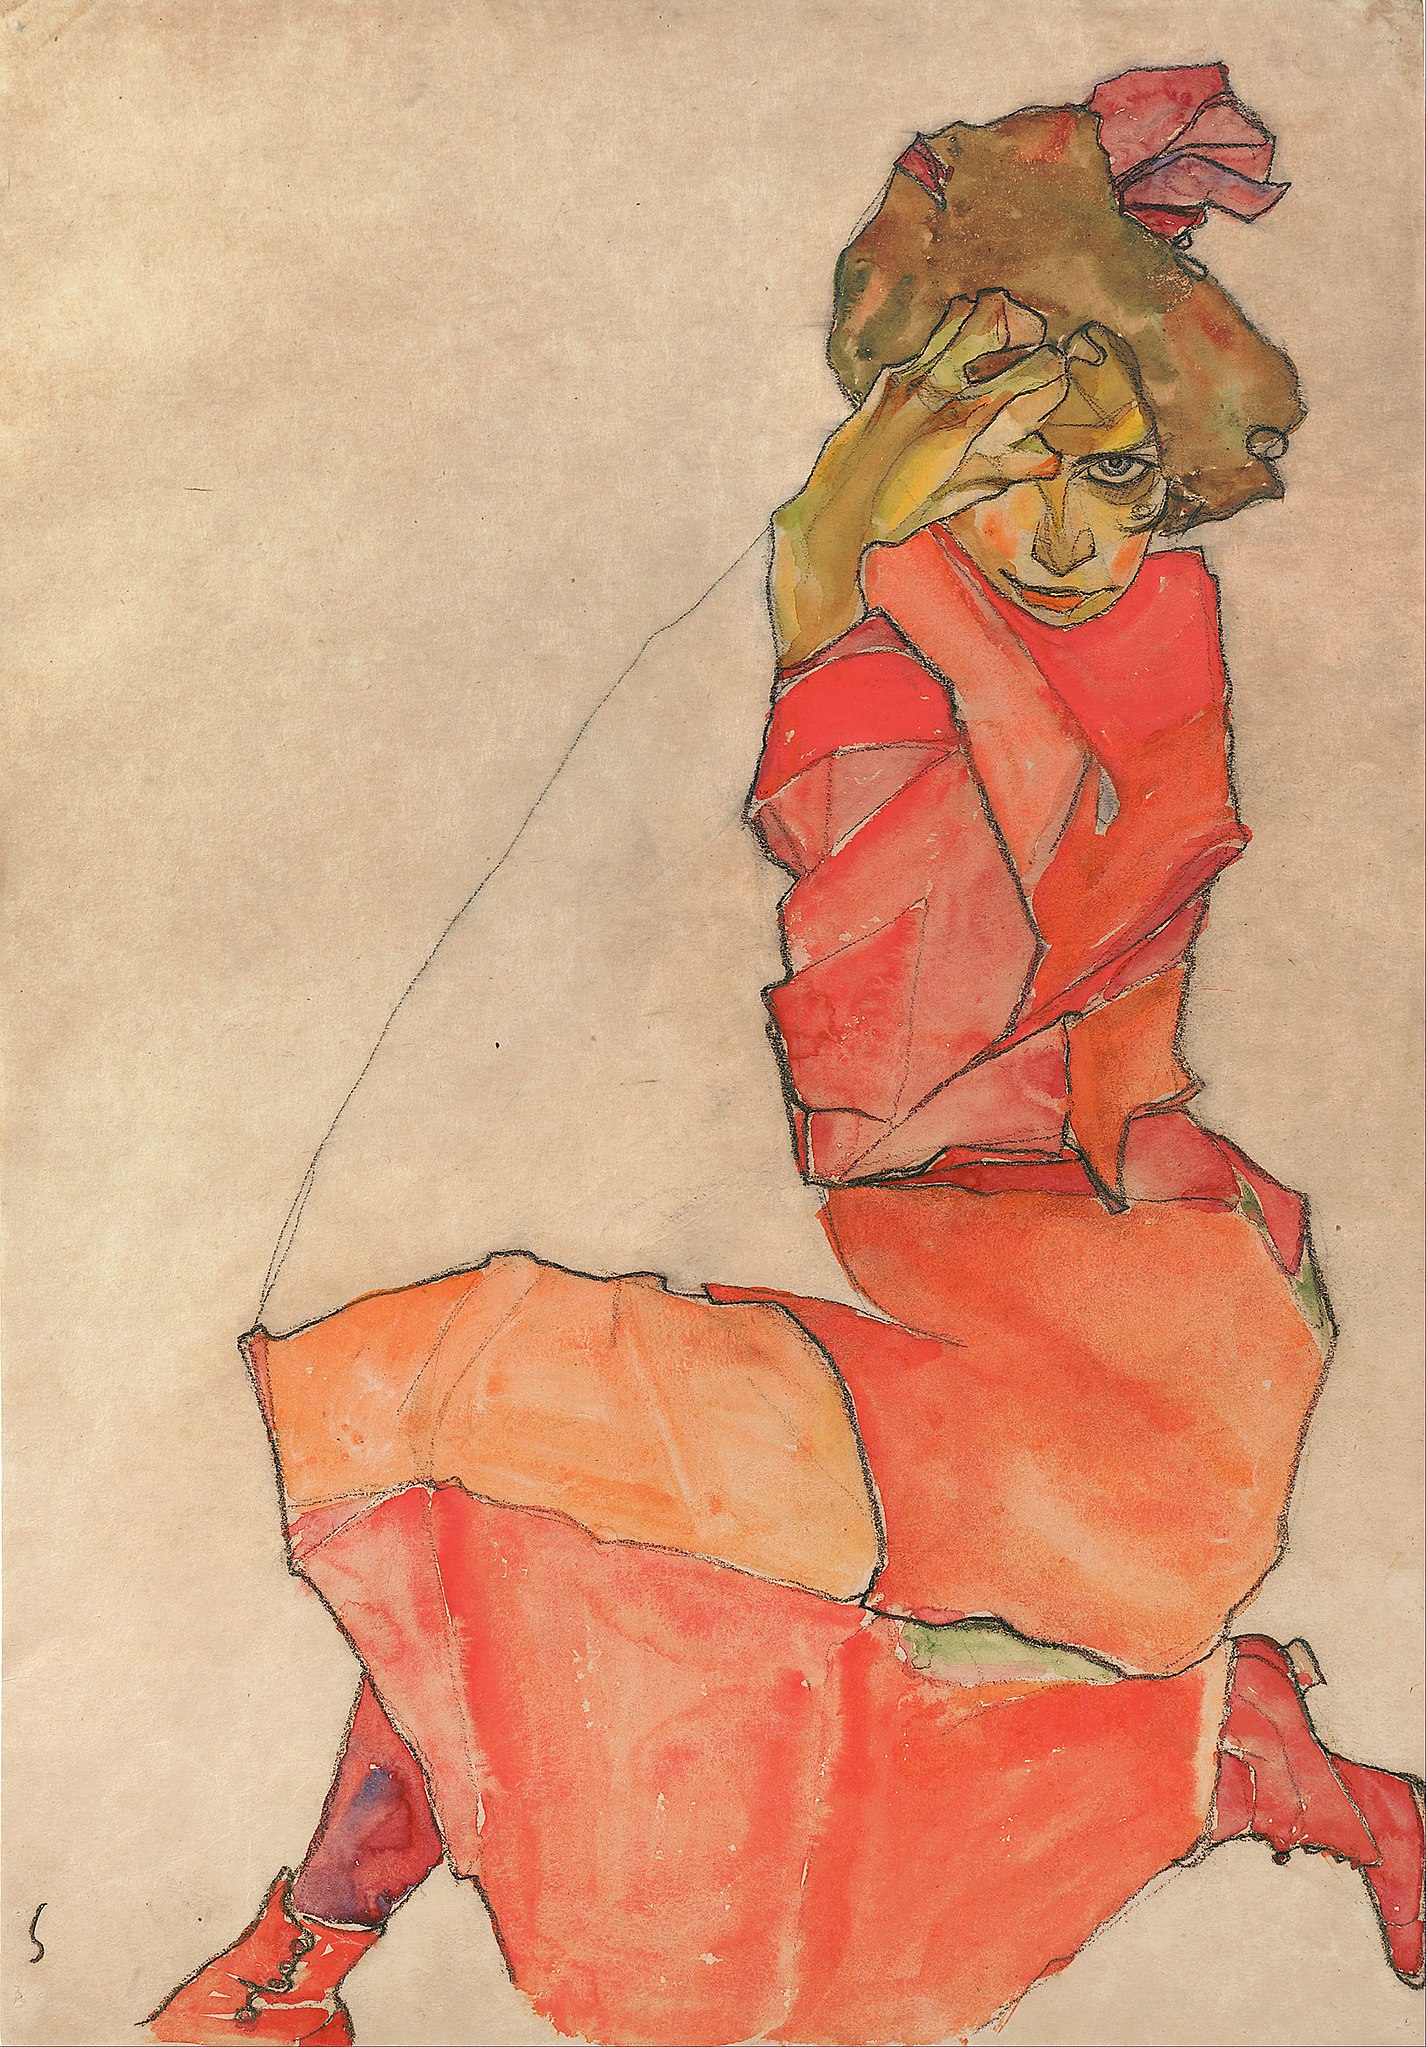 Femeie îngenunchiată în rochie portocalie-roșie by Egon Schiele - 1910 - 44.6 x 31 cm 